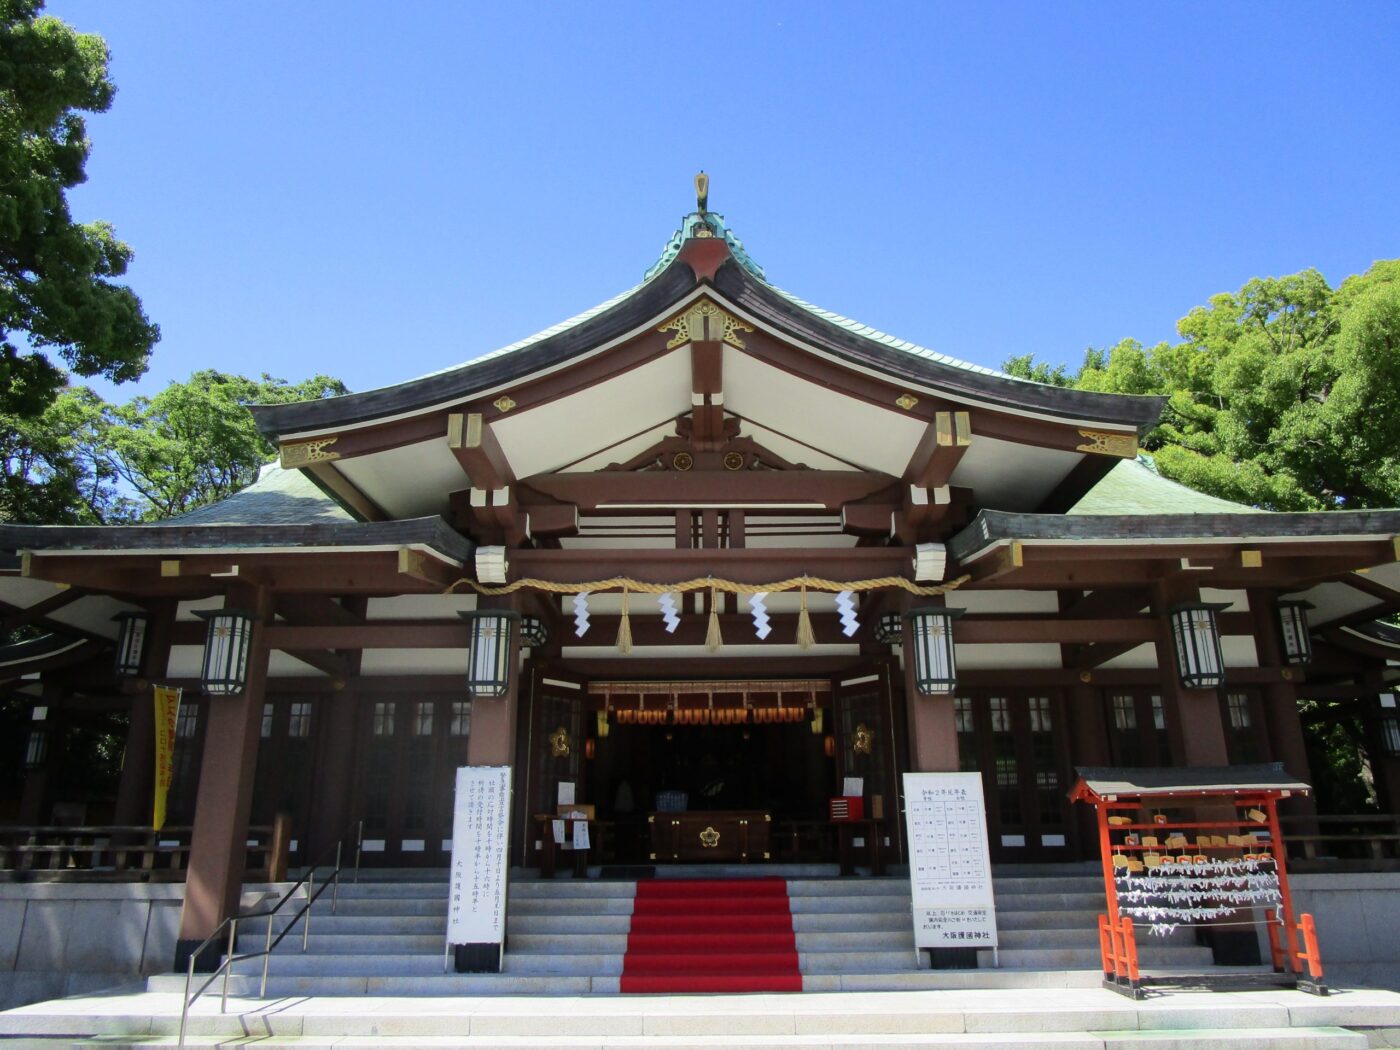 大阪護国神社 神社結婚式なび 業界最大級の神前式情報